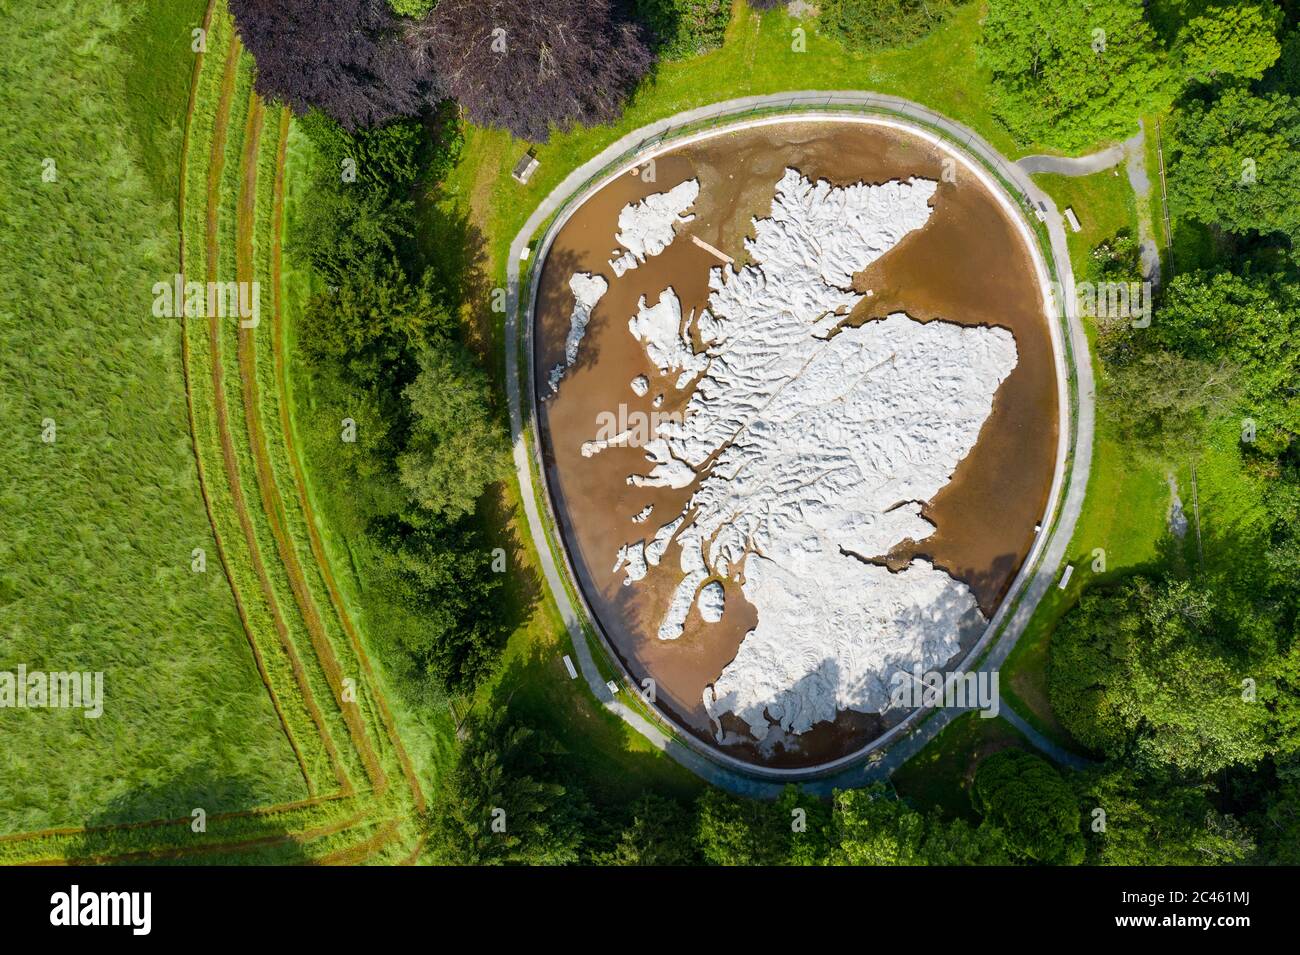 Eddleston, Écosse, Royaume-Uni. 24 juin 2020. Une vue aérienne de la Grande carte polonaise de l'Écosse, comme si elle était le reflet des conditions ensoleillées et sans nuage dont jouissait l'Écosse aujourd'hui. La carte est un modèle tridimensionnel d'Écosse à l'échelle en béton de 50 m x 40 m, situé à l'hôtel Barony Castle, Eddleston près de Peebles. Il a été construit par Jan Tomasik, ancien combattant polonais, entre 1974 et 1979 et est déclaré comme le plus grand modèle de relief du monde. La sculpture est un bâtiment classé de catégorie B. Iain Masterton/Alay Live News Banque D'Images